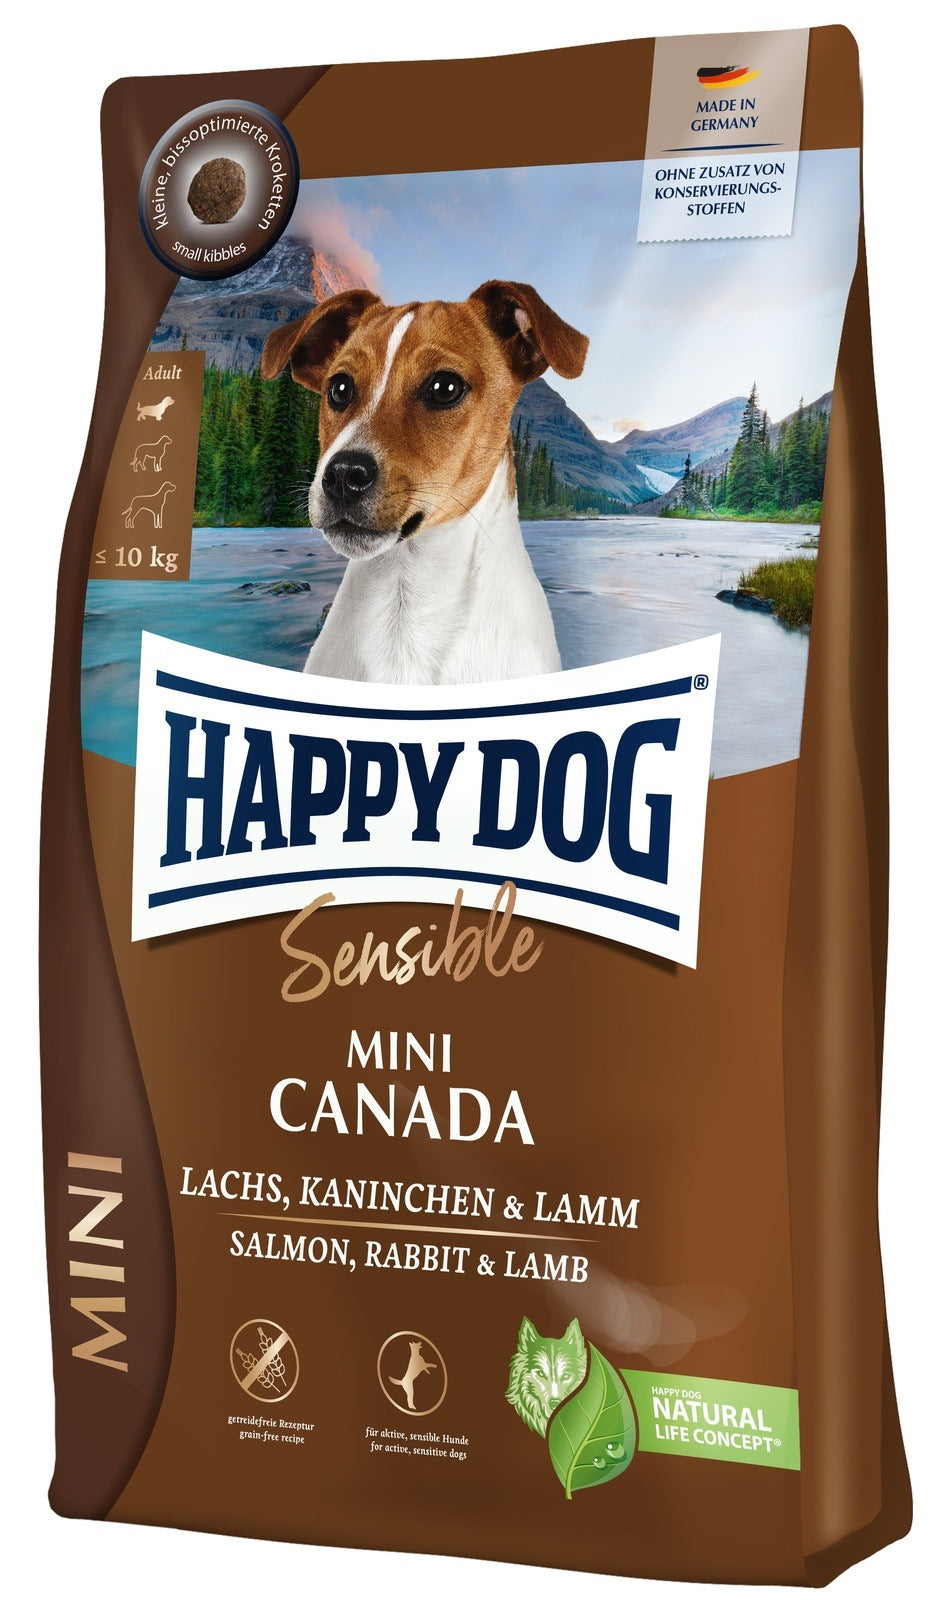 Artikel mit dem Namen Happy Dog Sensible Mini Canada im Shop von zoo.de , dem Onlineshop für nachhaltiges Hundefutter und Katzenfutter.